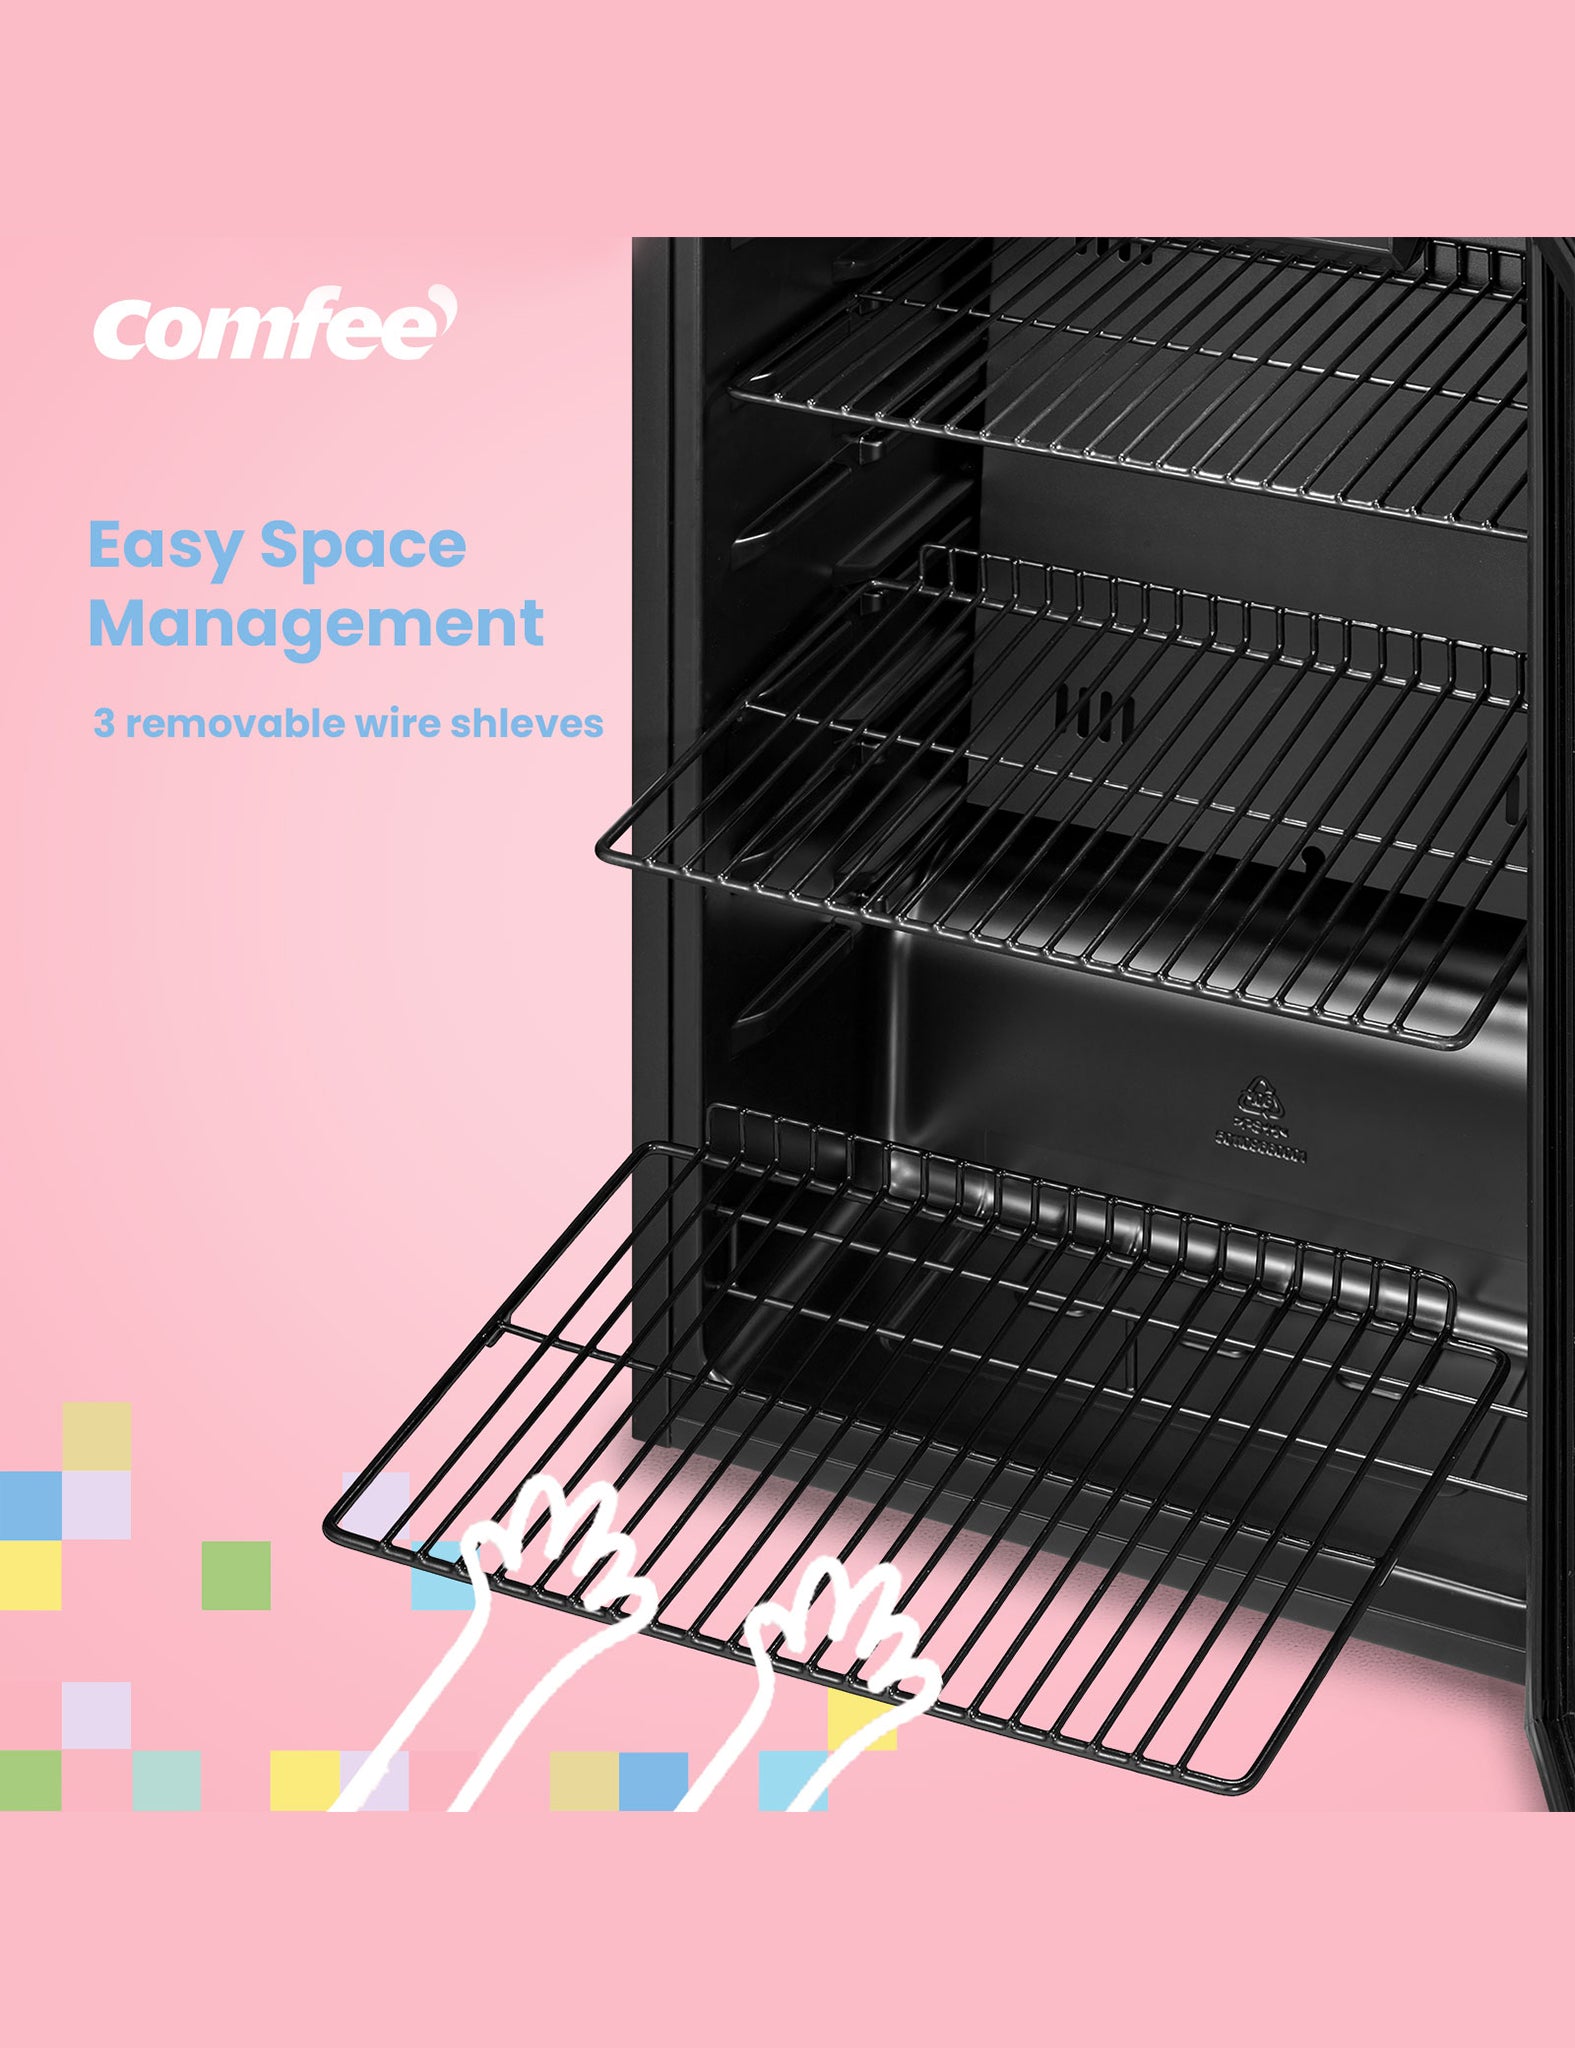 comfee beverage cooler refrigerators removable shelves